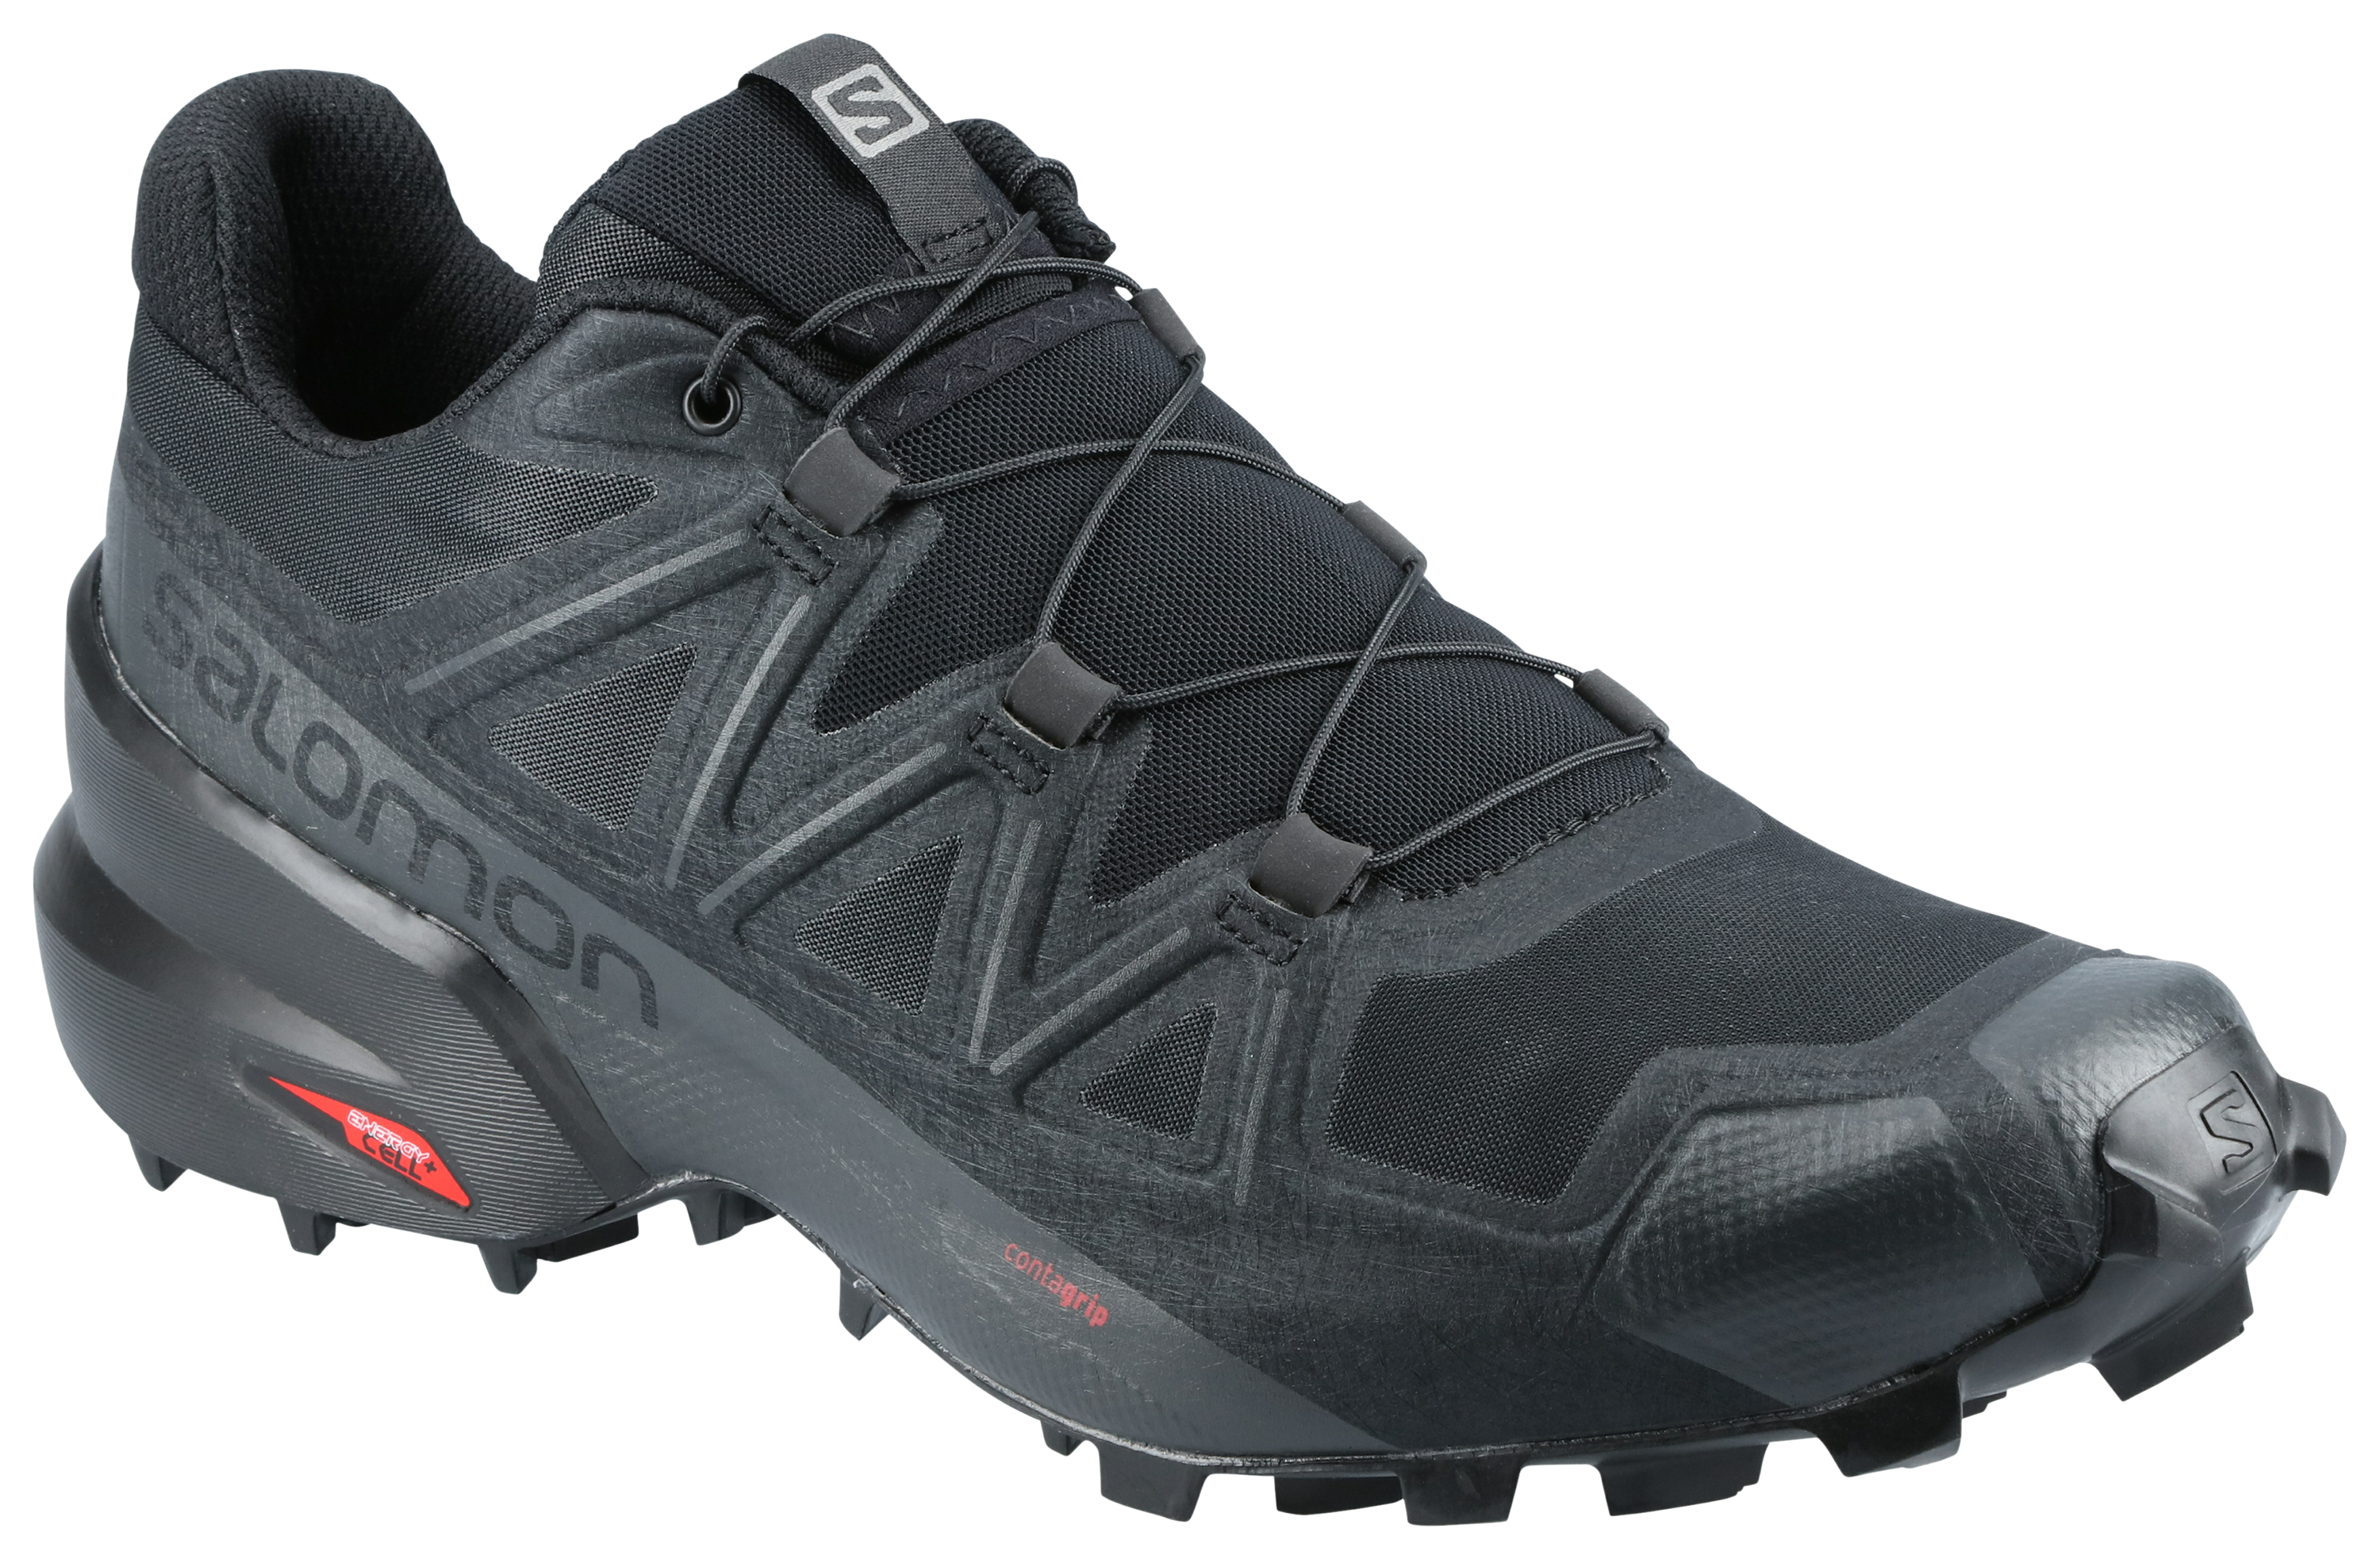 Salomon Speedcross 5 Trail Running Shoes for Men - Black/Black/Phantom - 8.5M